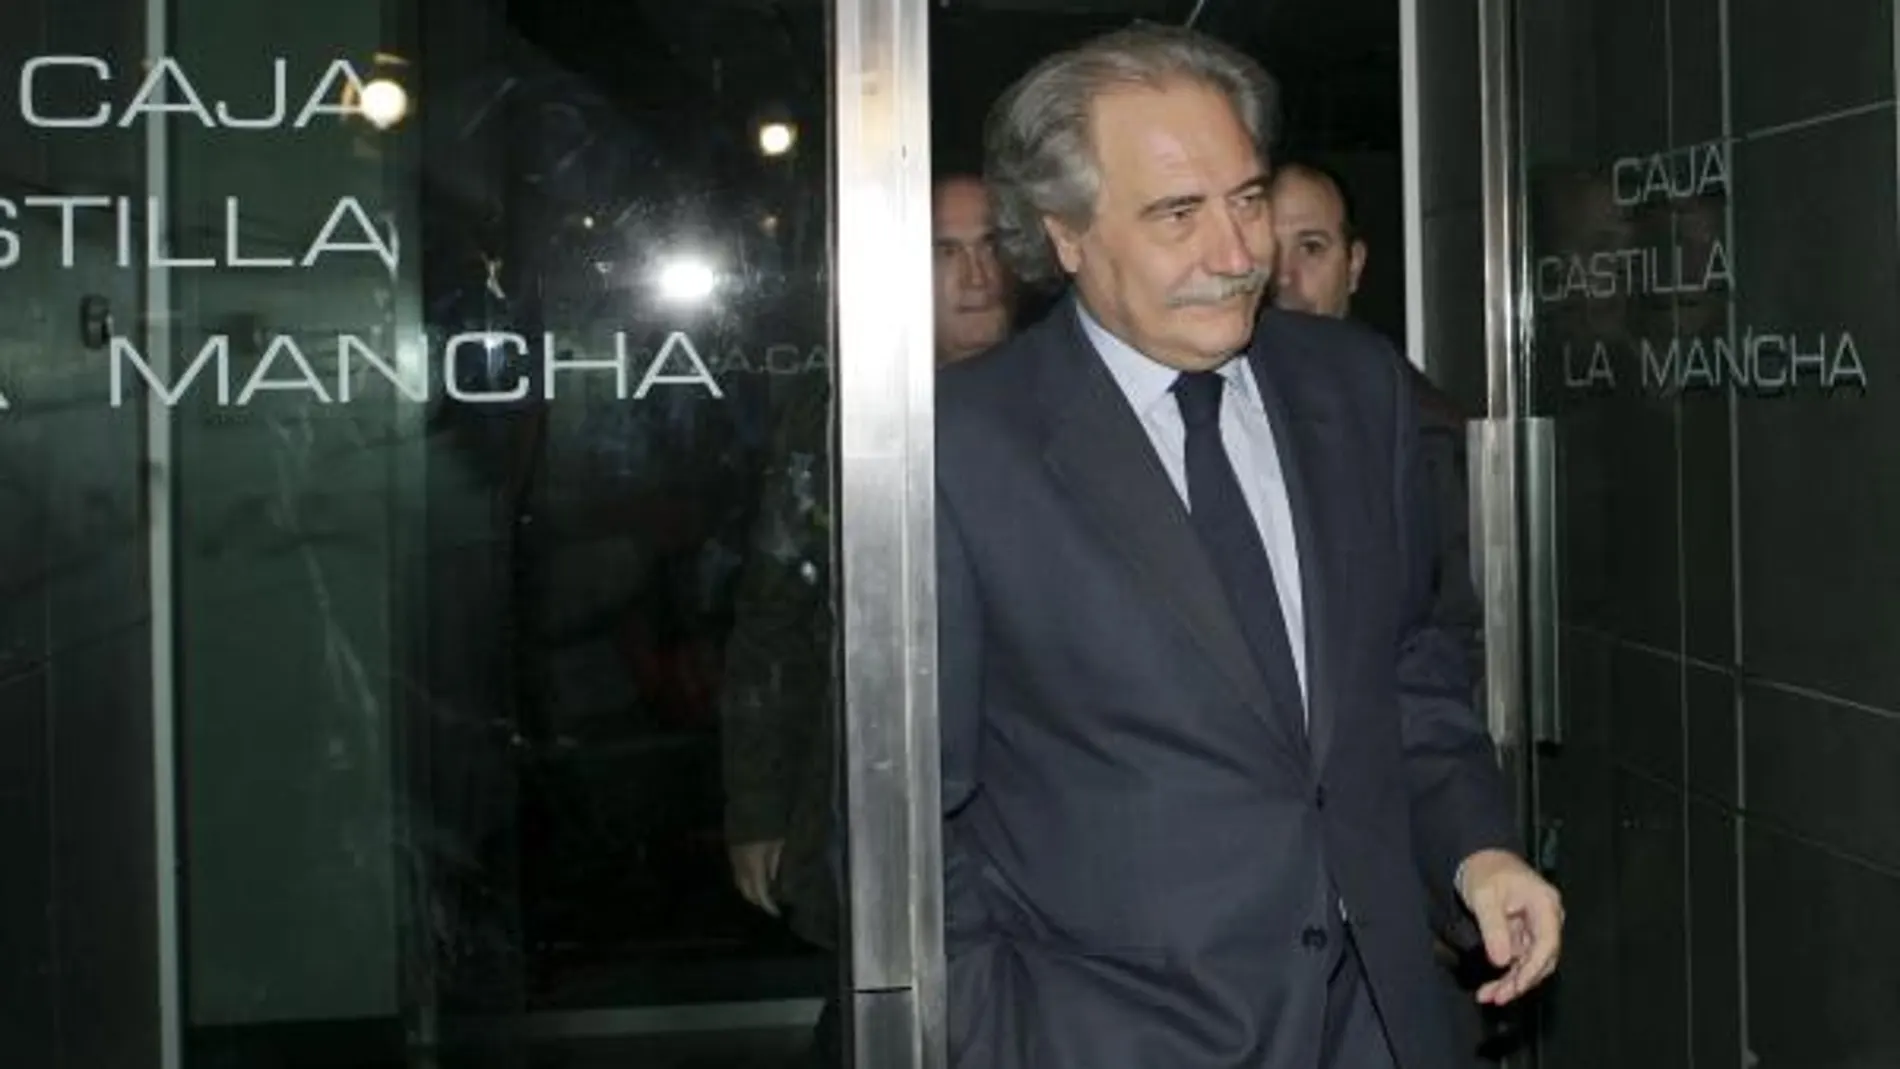 El presidente de la Caja Castilla-La Mancha, Juan Pedro Hernández Moltó, a su salida de la sede que la Caja tiene en Madrid